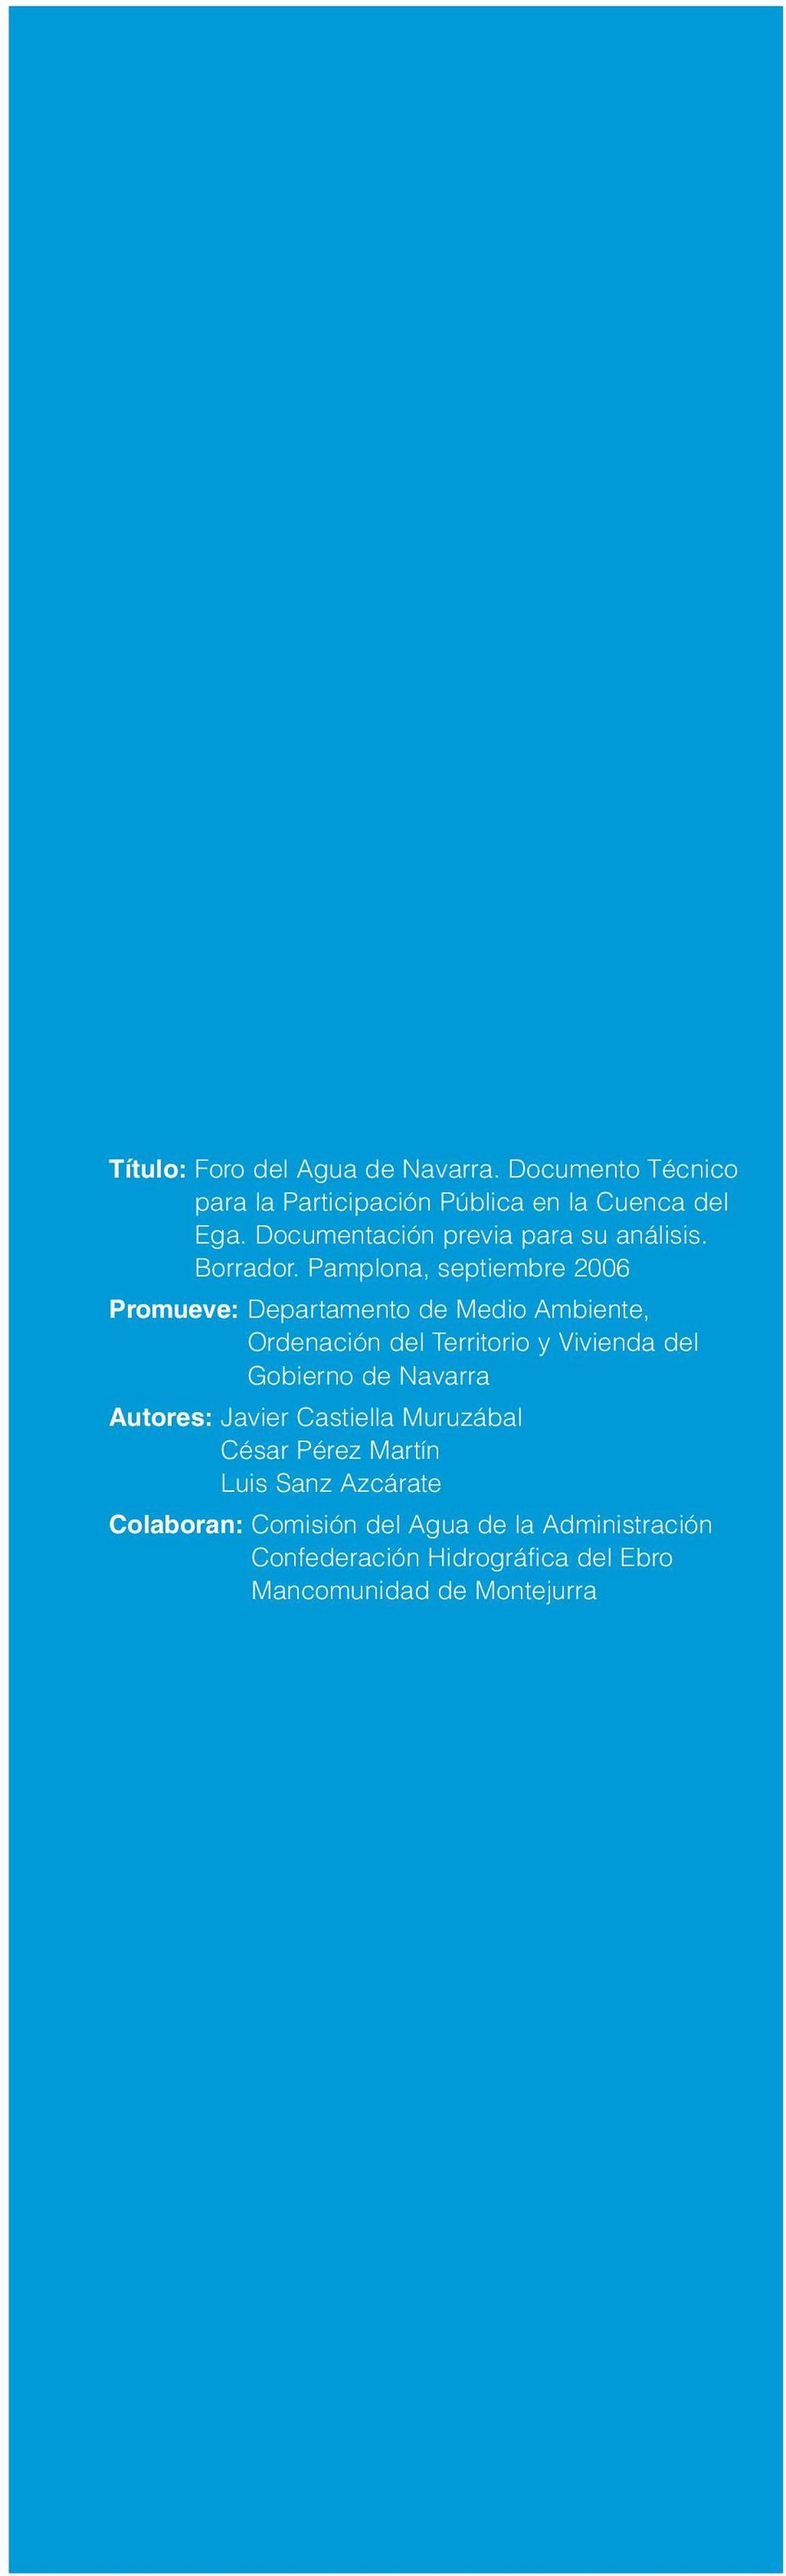 Pamplona, septiembre 2006 Promueve: Departamento de Medio Ambiente, Ordenación del Territorio y Vivienda del